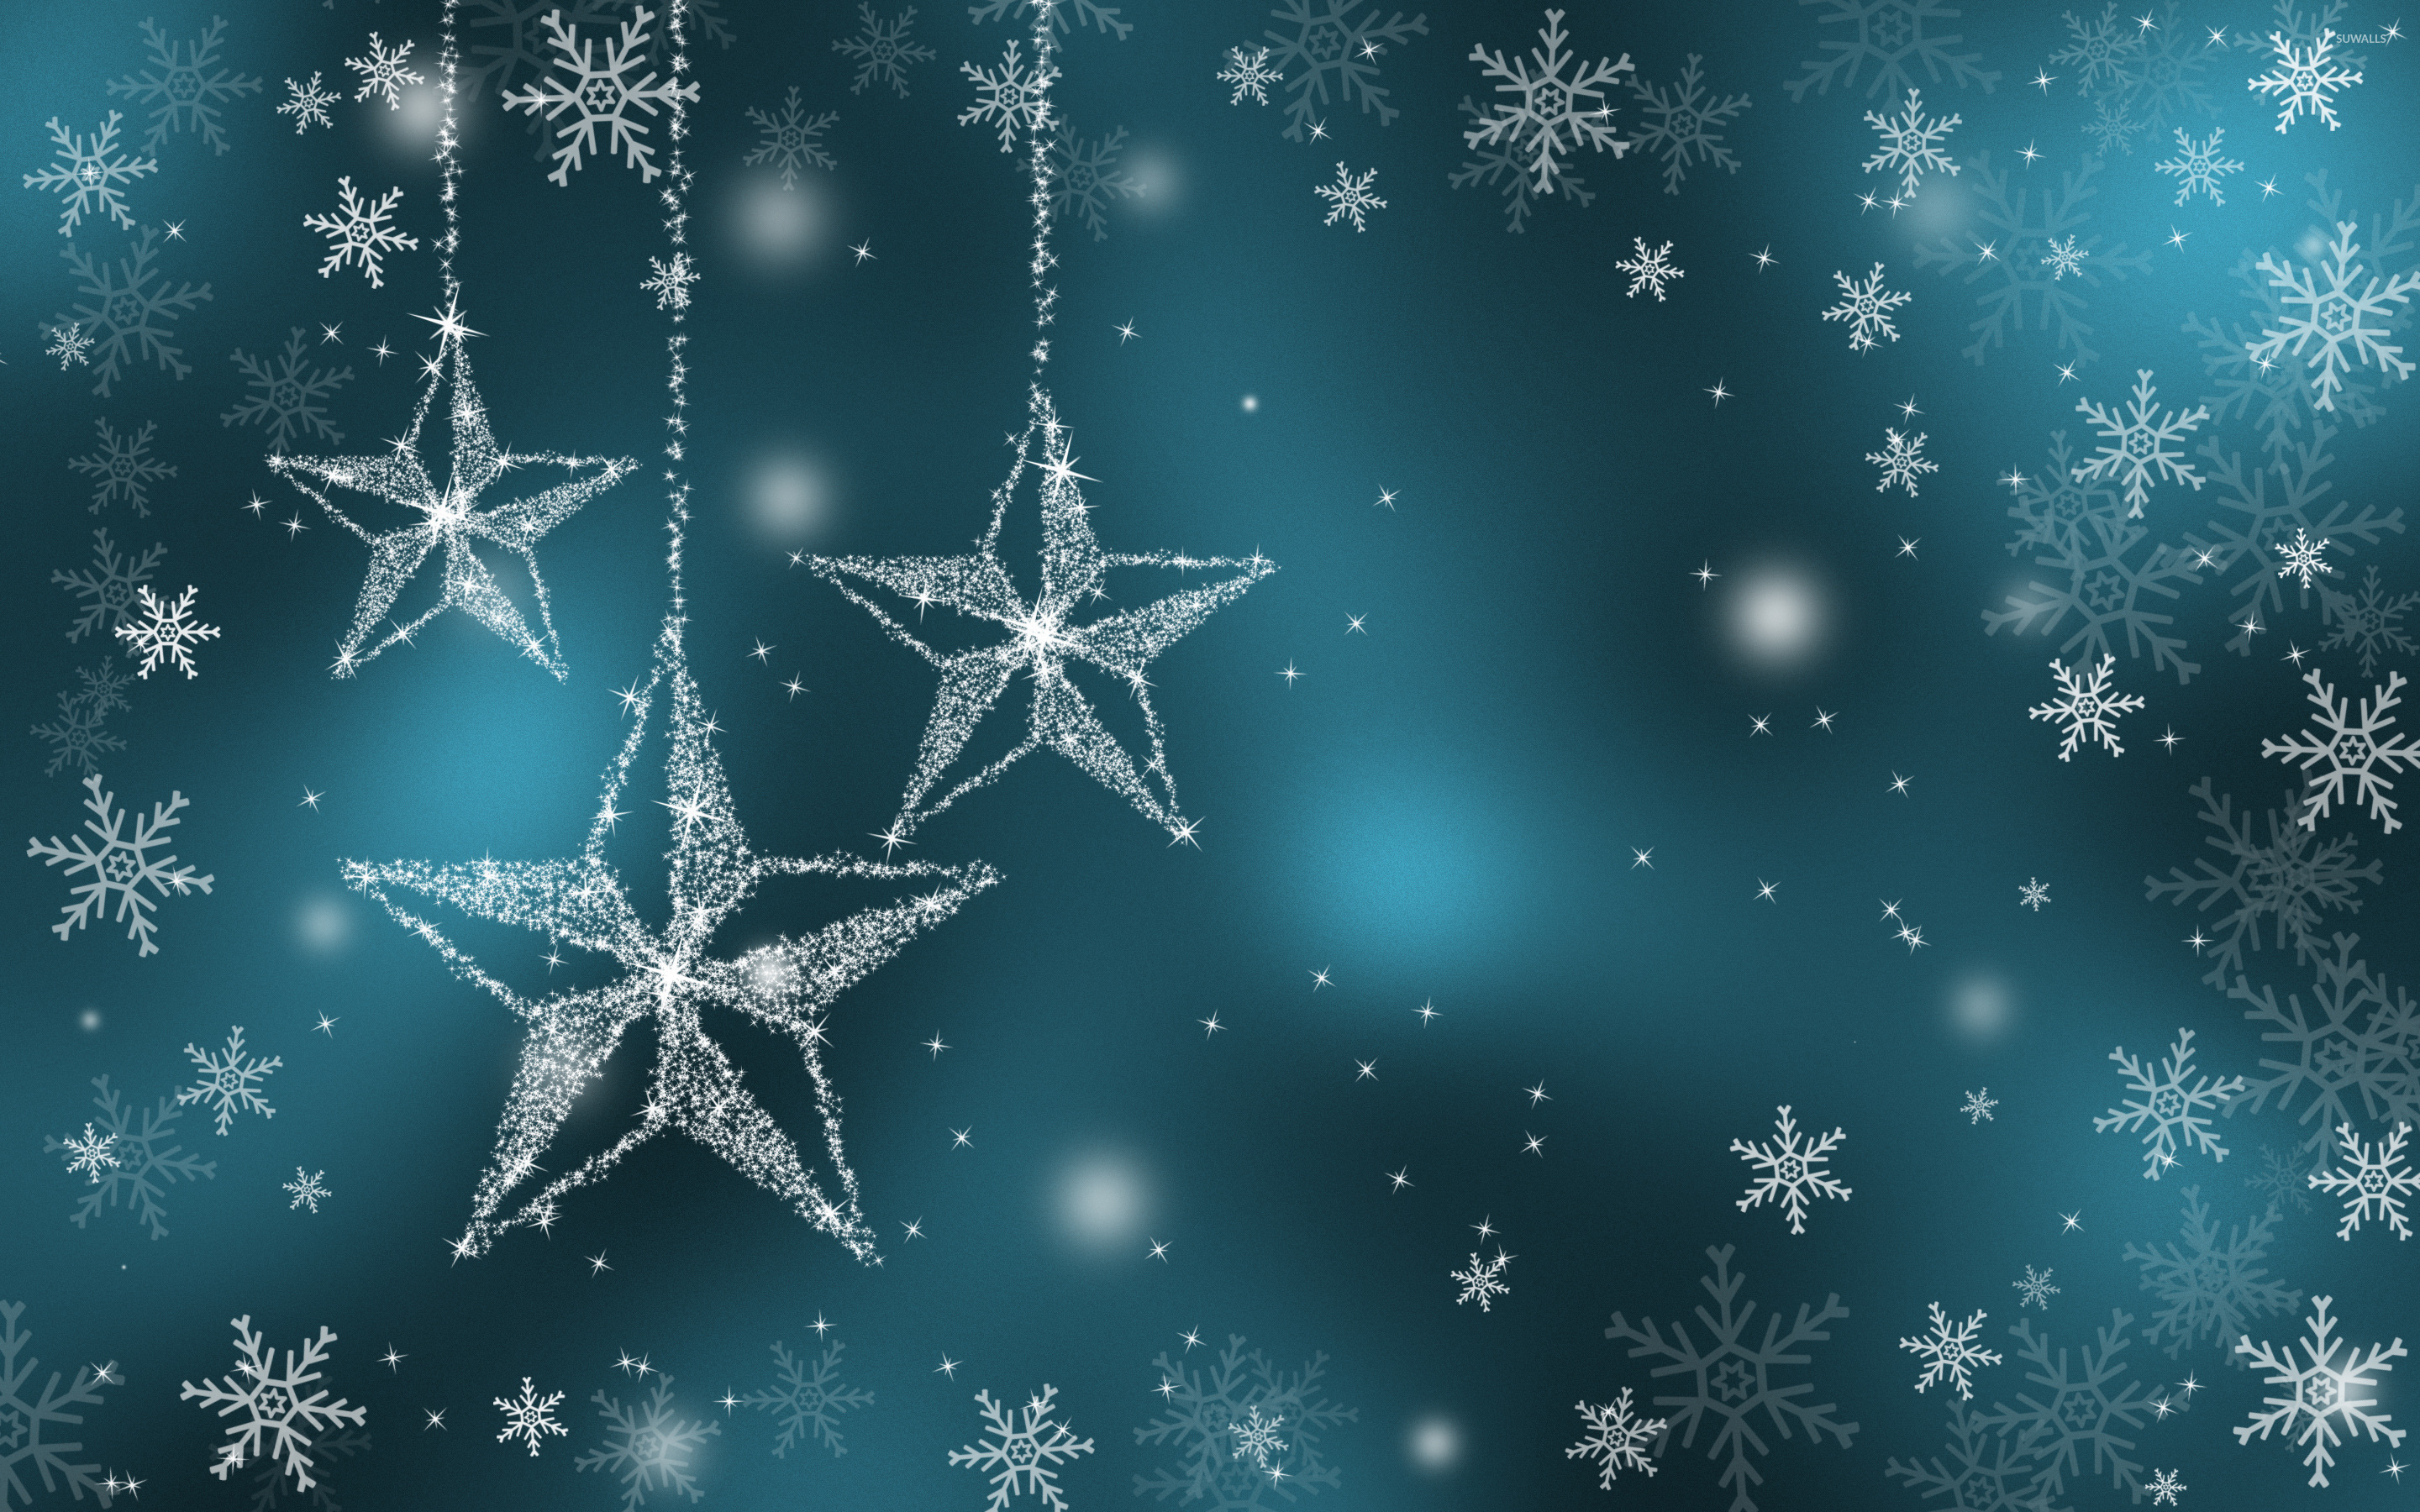 Sparkling Stars Wallpaper Holiday